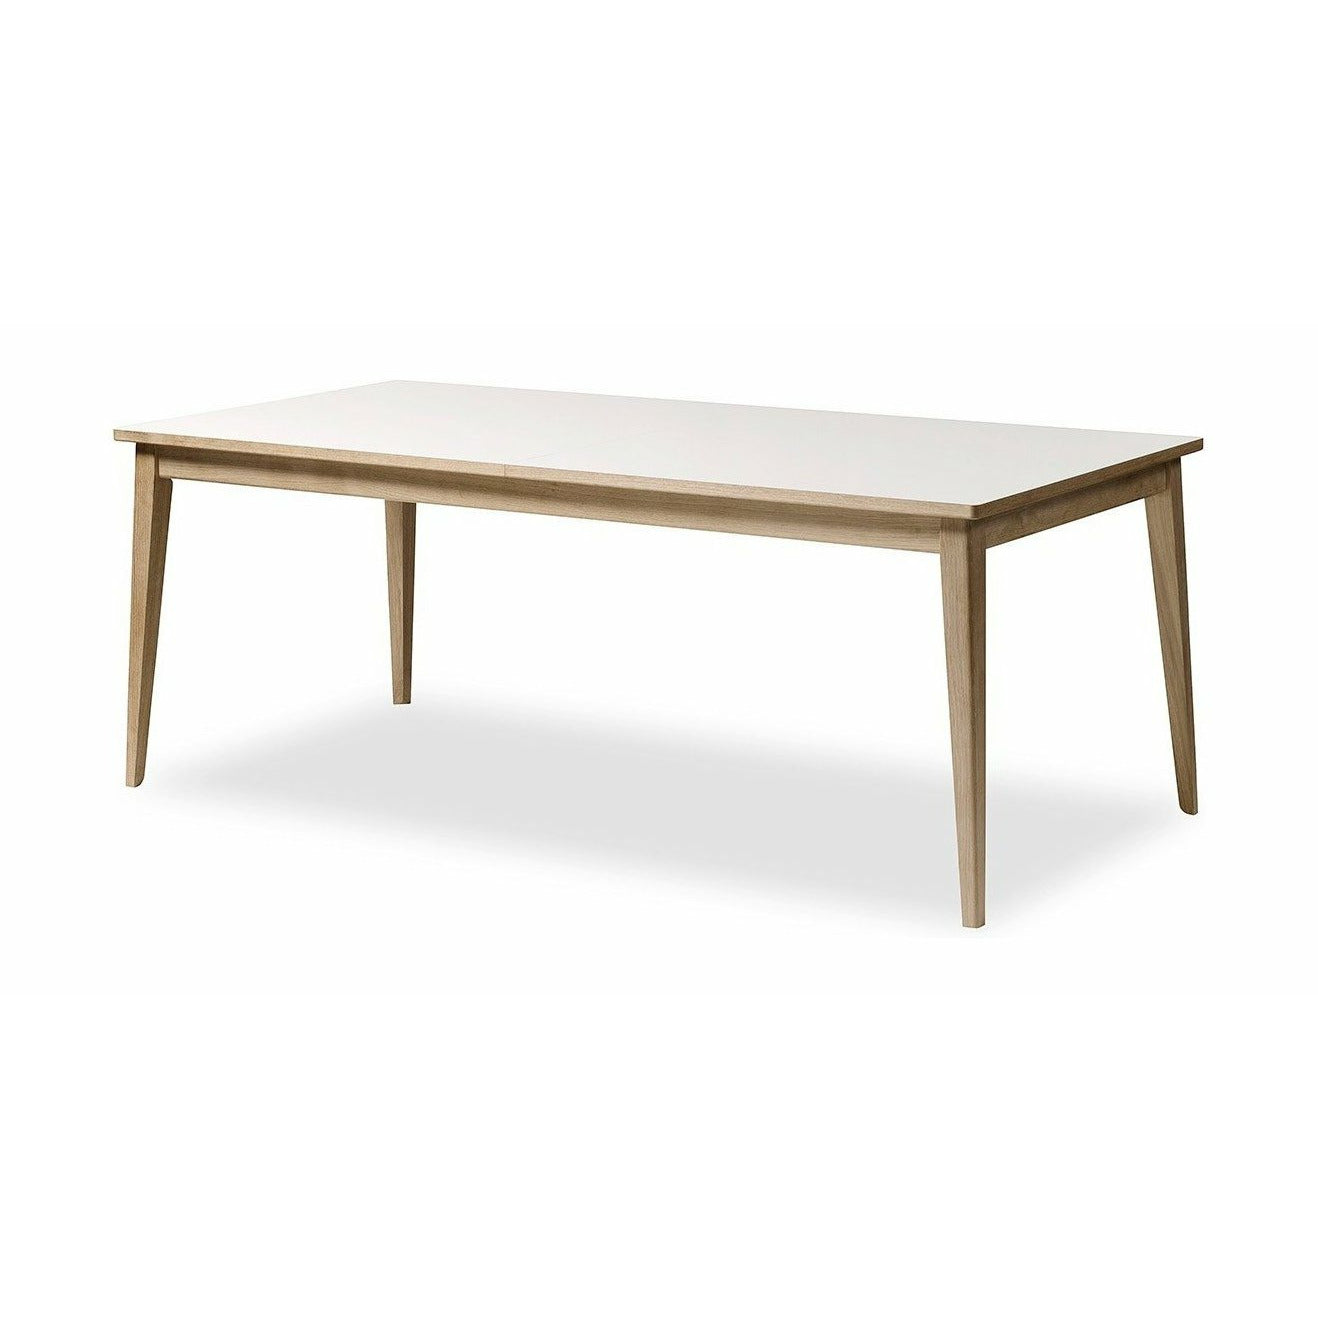 Andersen Furniture T3 Spisebord i Hvid Laminat, Sæbet Eg Understel, 200cm